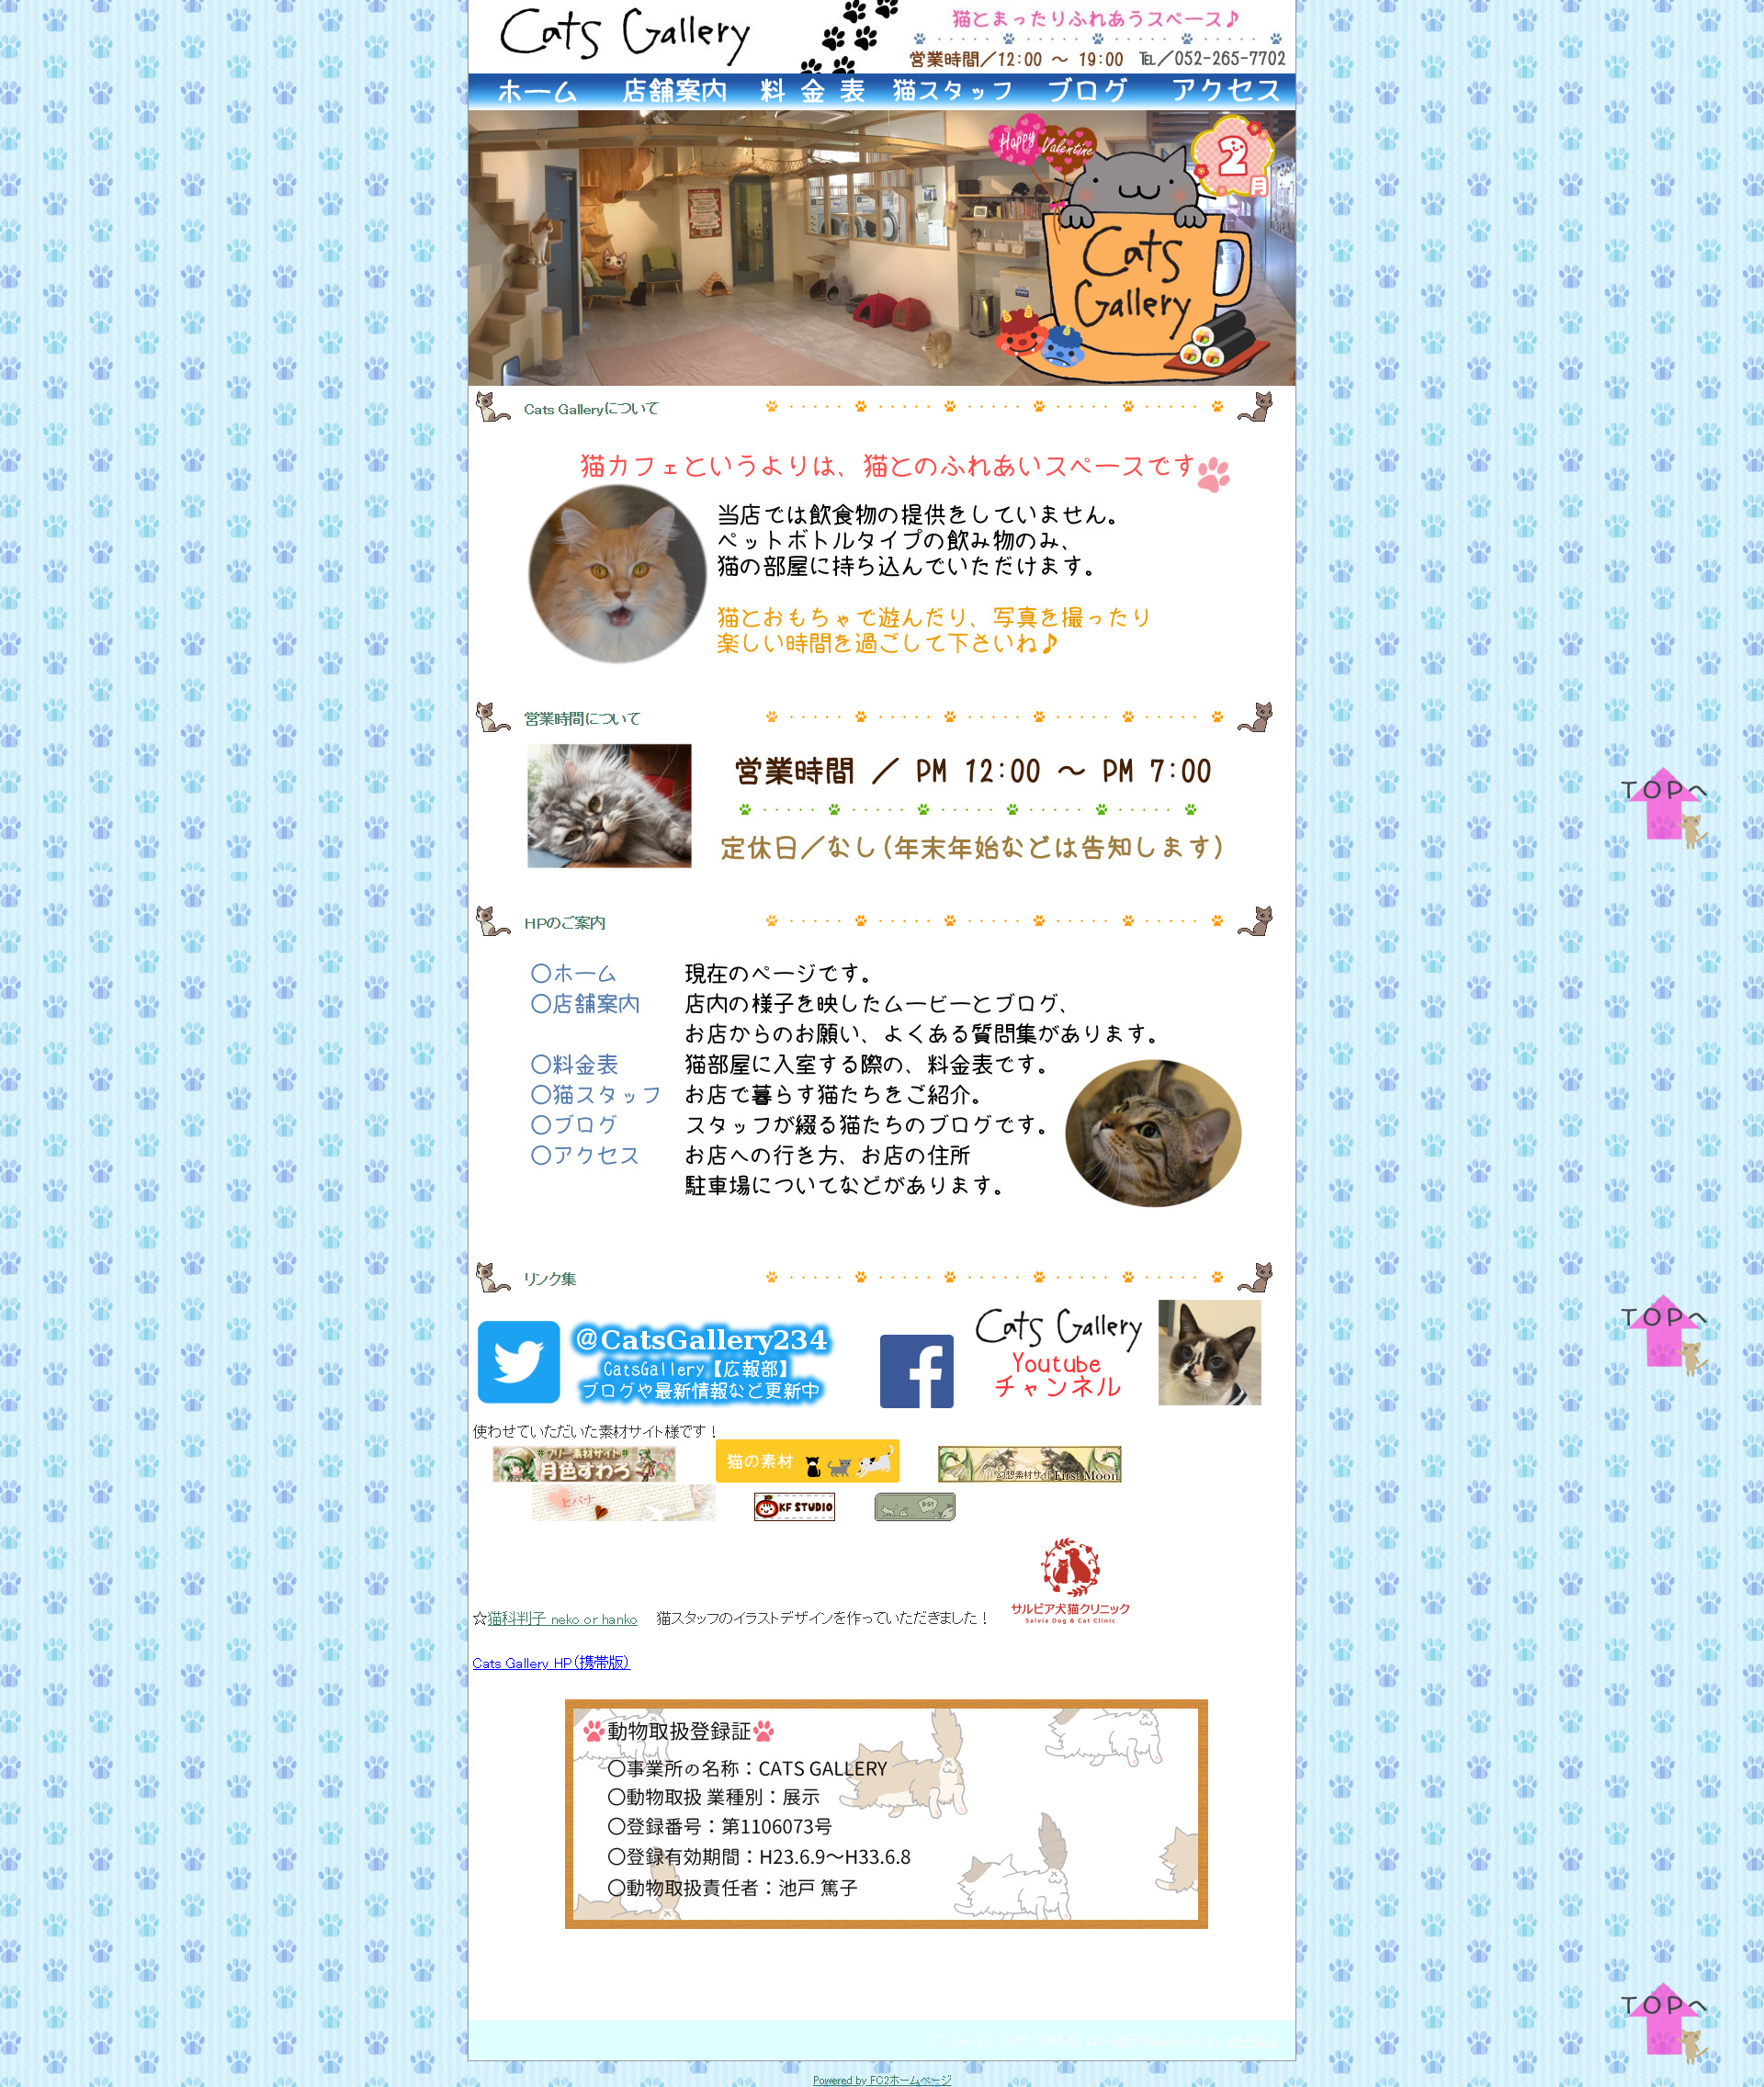 猫カフェ併設コインランドリー「Cats Gallery」(愛知県名古屋市)